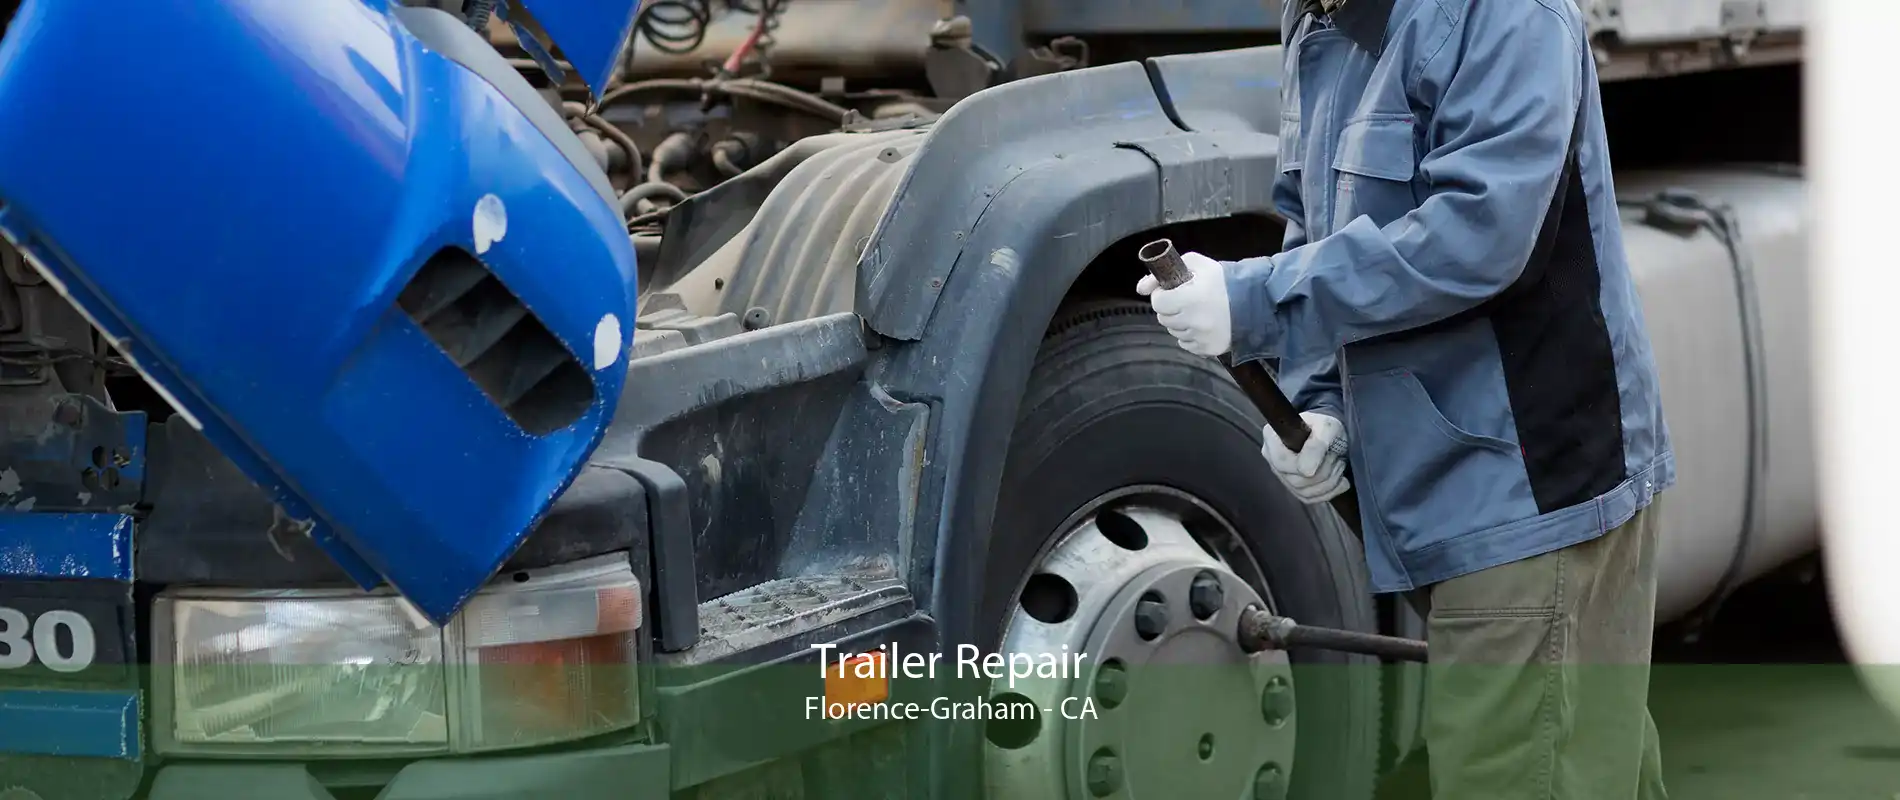 Trailer Repair Florence-Graham - CA